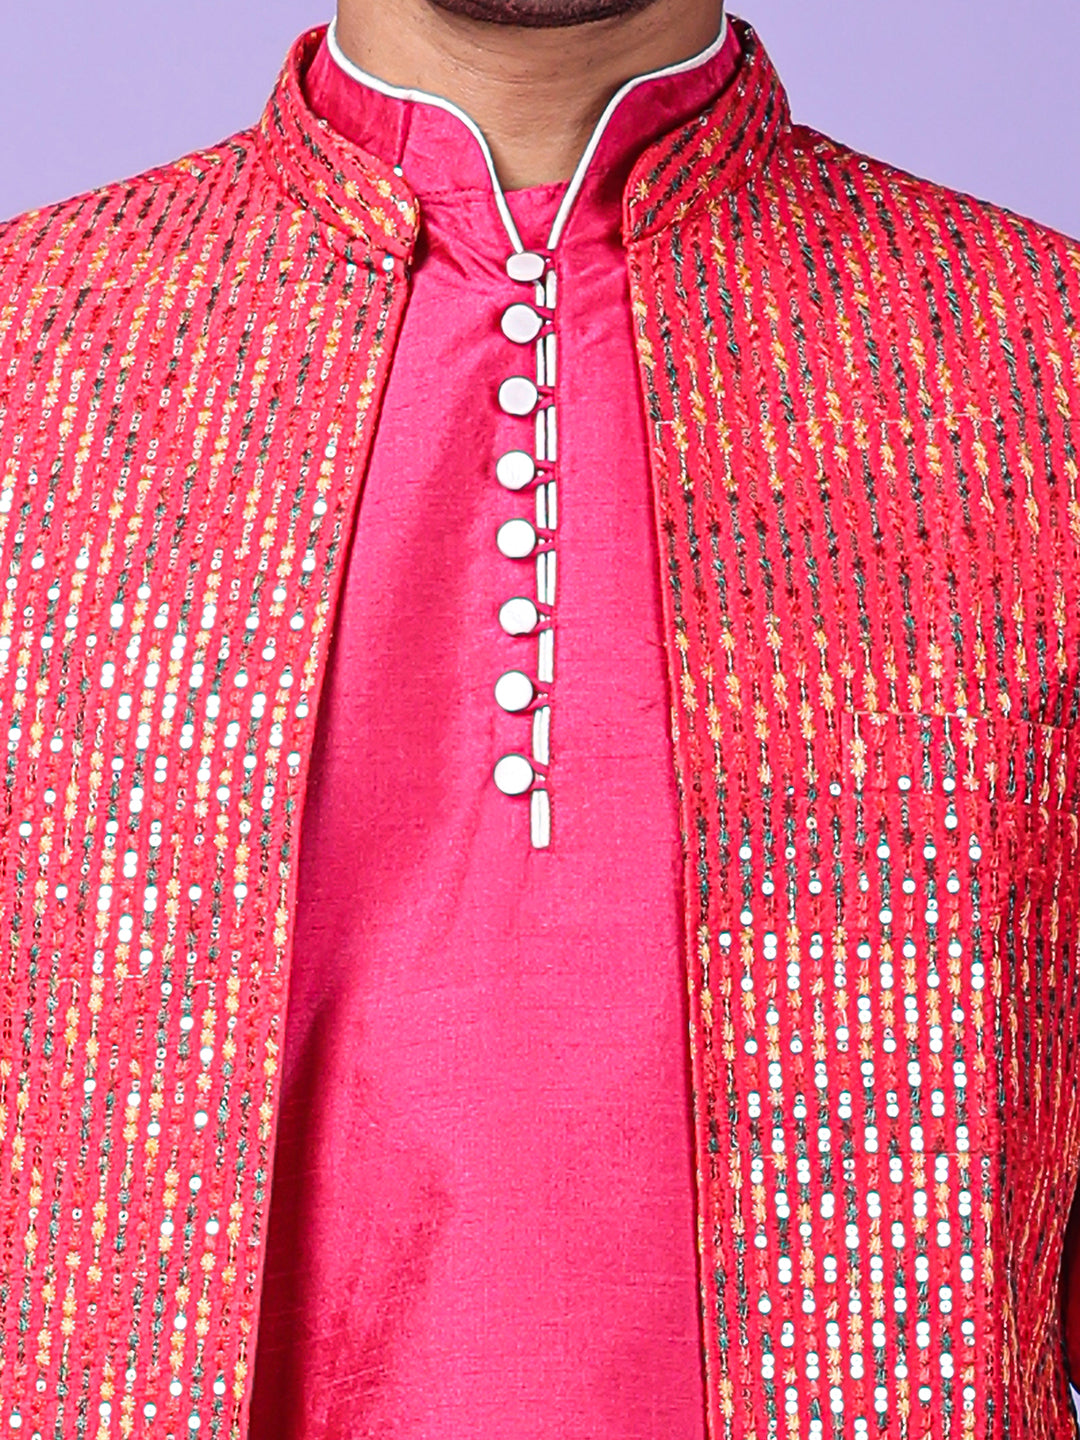 Hangup Men's Partywear Pink Nehru